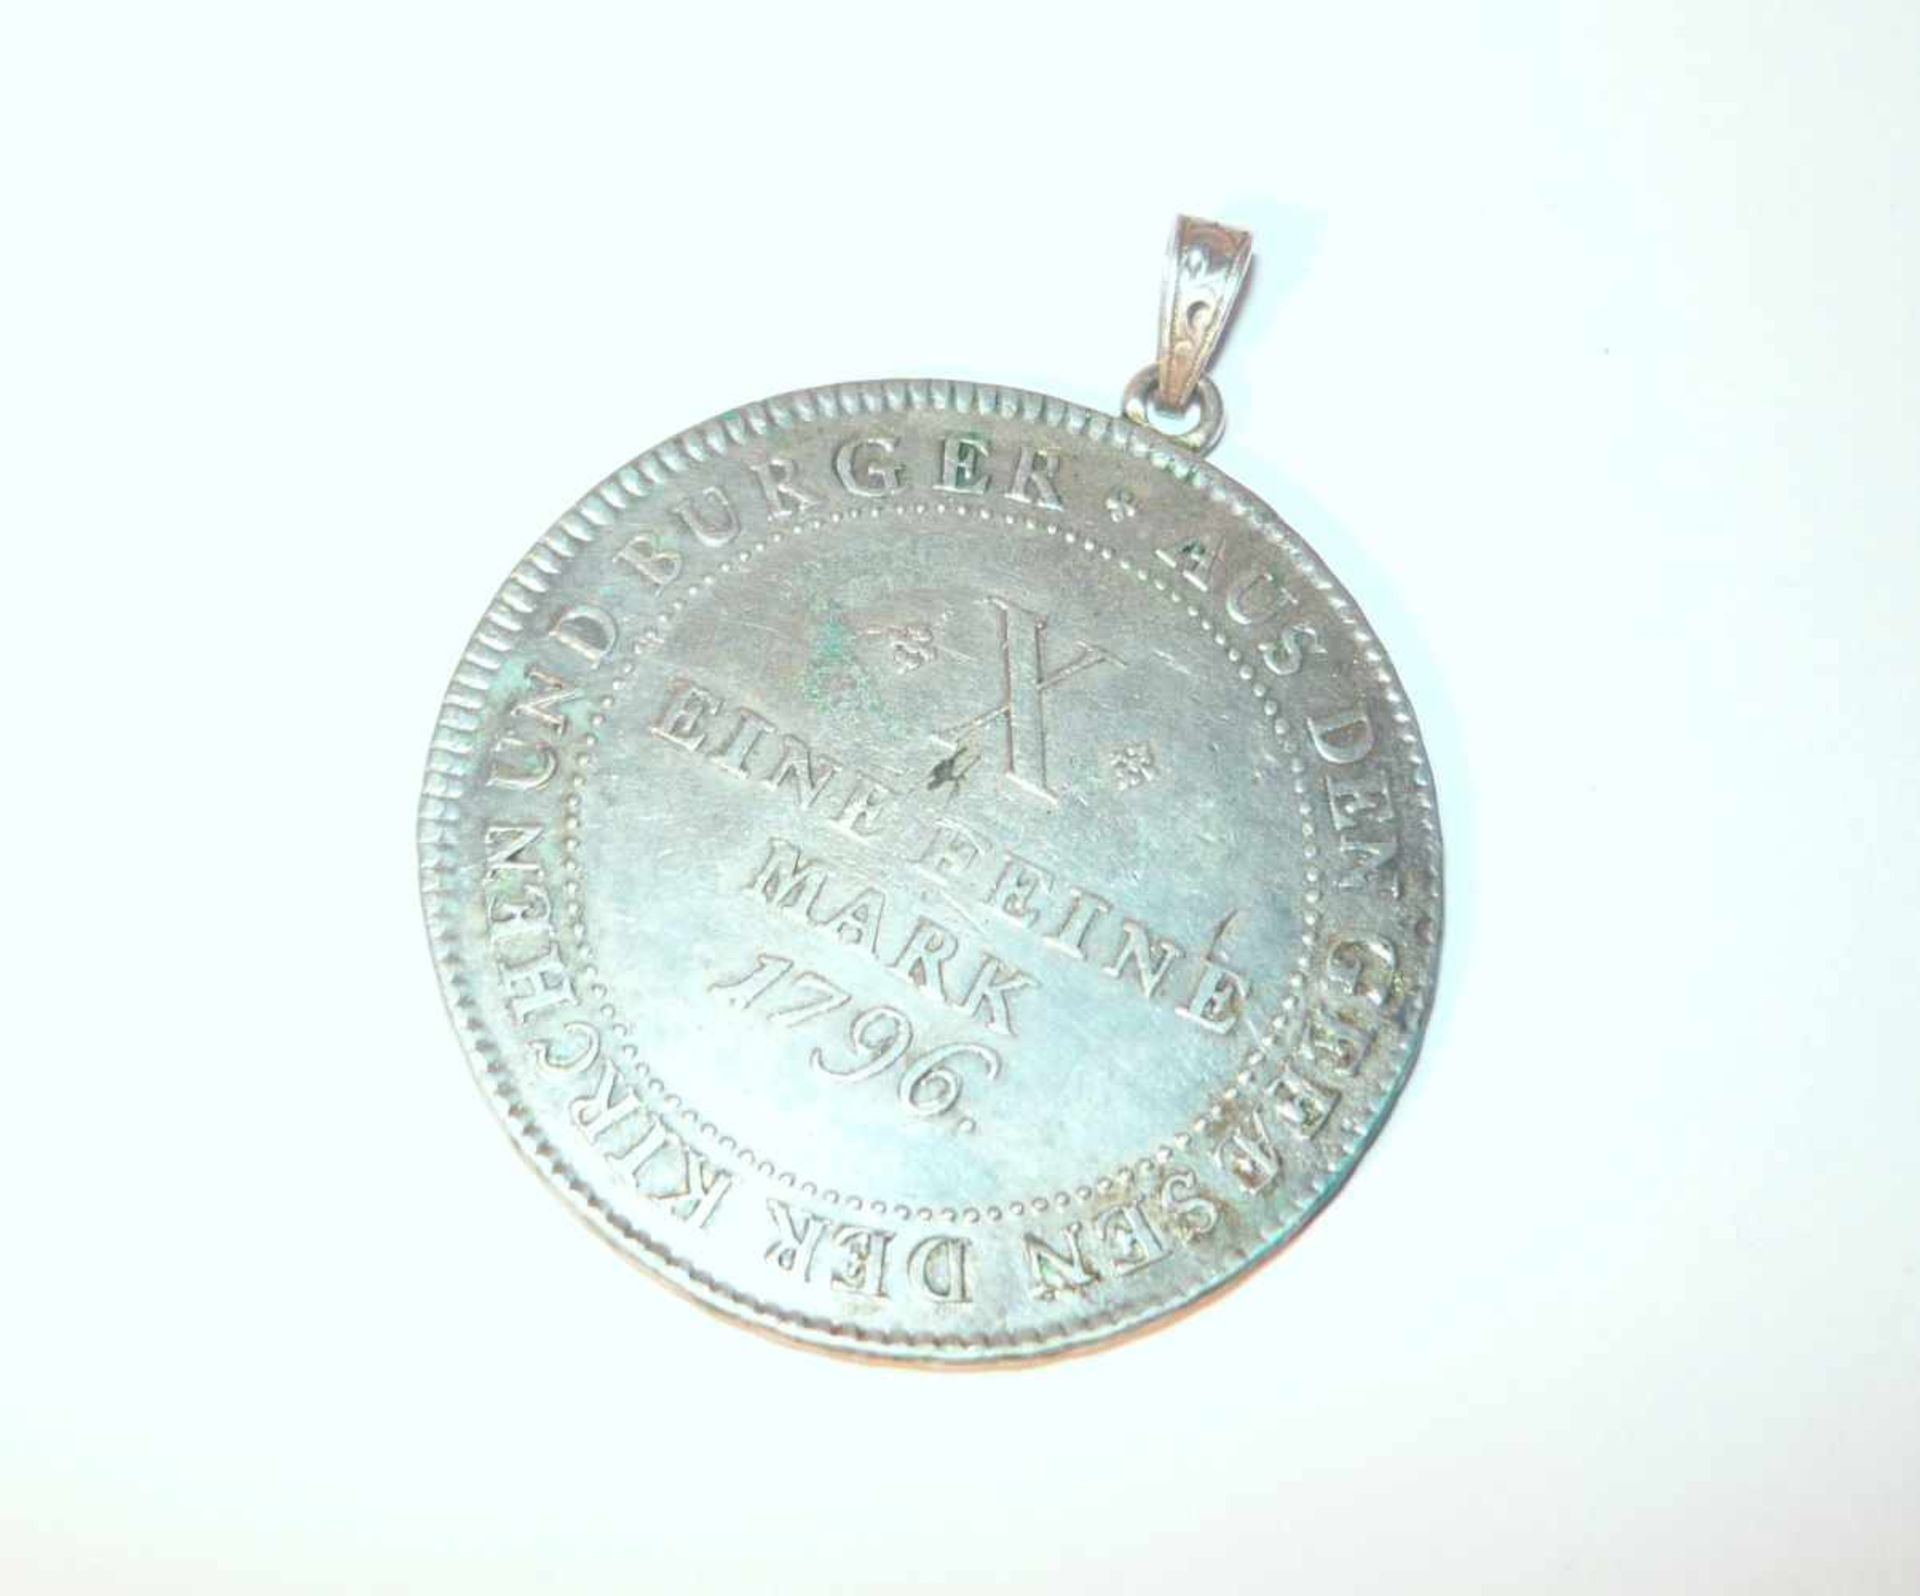 Konventionstaler von 1796. Silber. DM ca. 4 cm.Convention thaler from 1796. Silver. Diam. app. 4 - Bild 2 aus 3